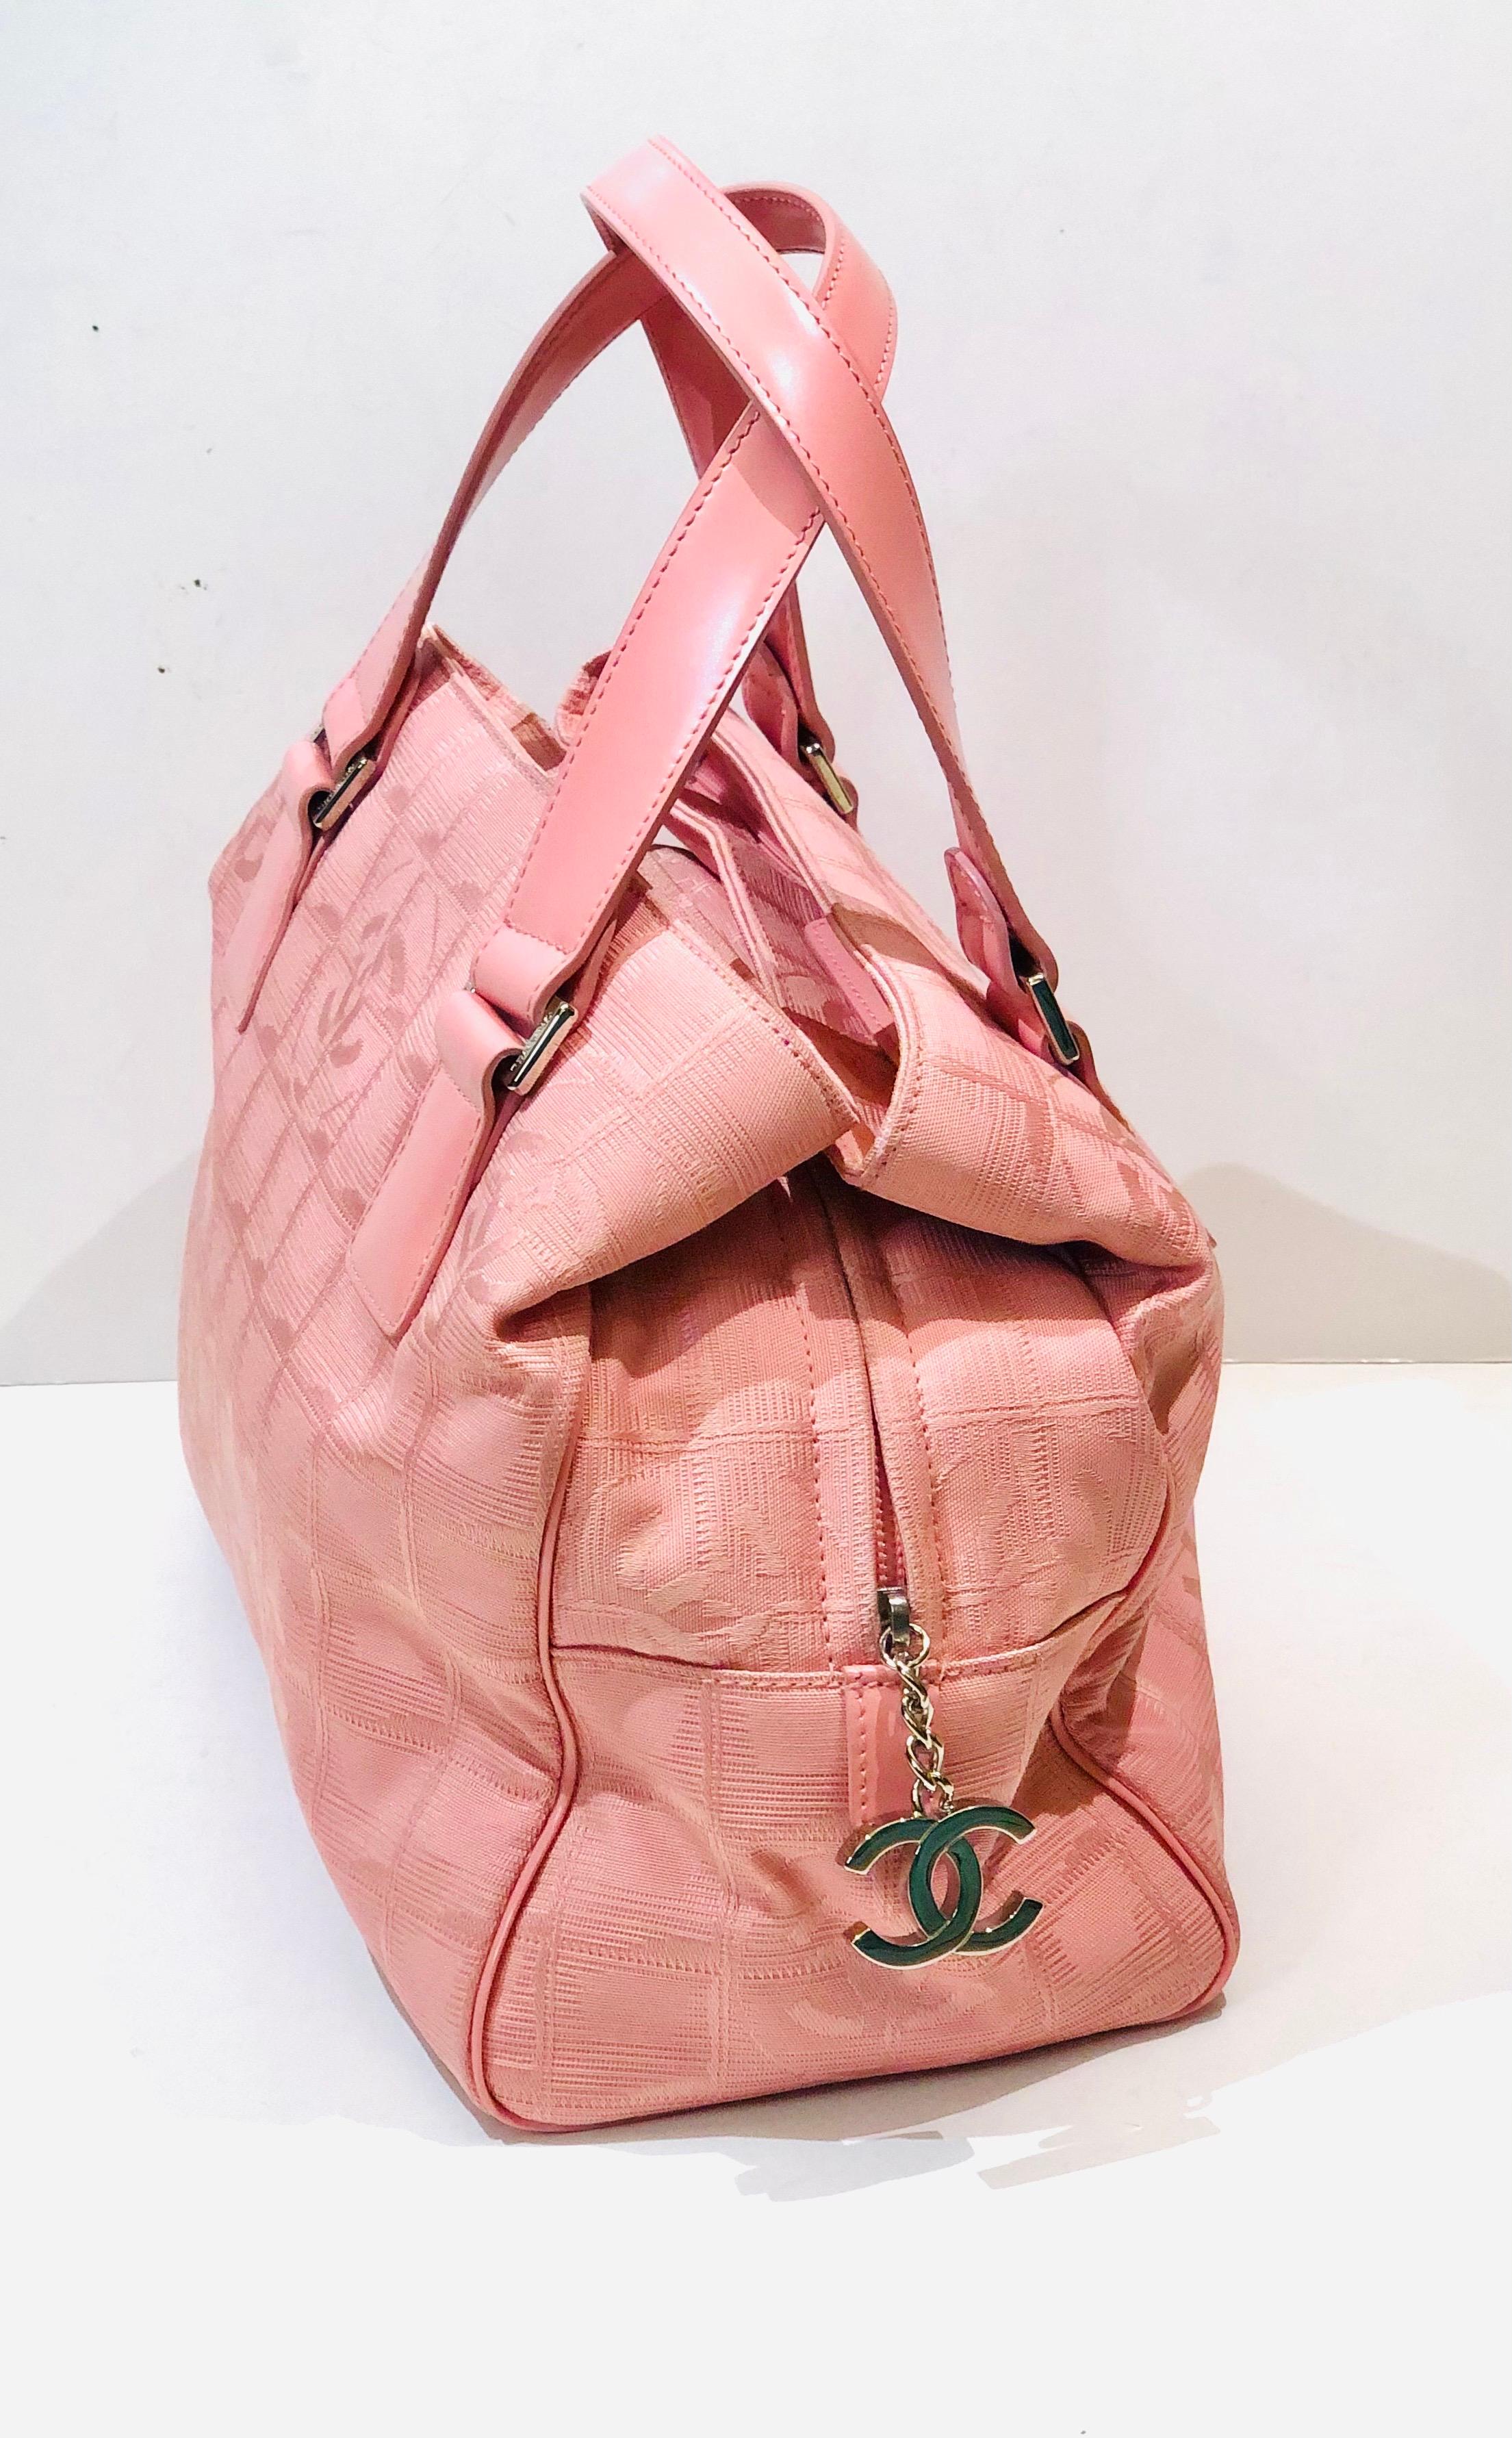 - Chanel pinke Handtasche im Boston-Stil aus dem Jahr 2004 bis 2005.

- Griff aus Leder.

- Zwei Fächer mit Reißverschluss.

- CC